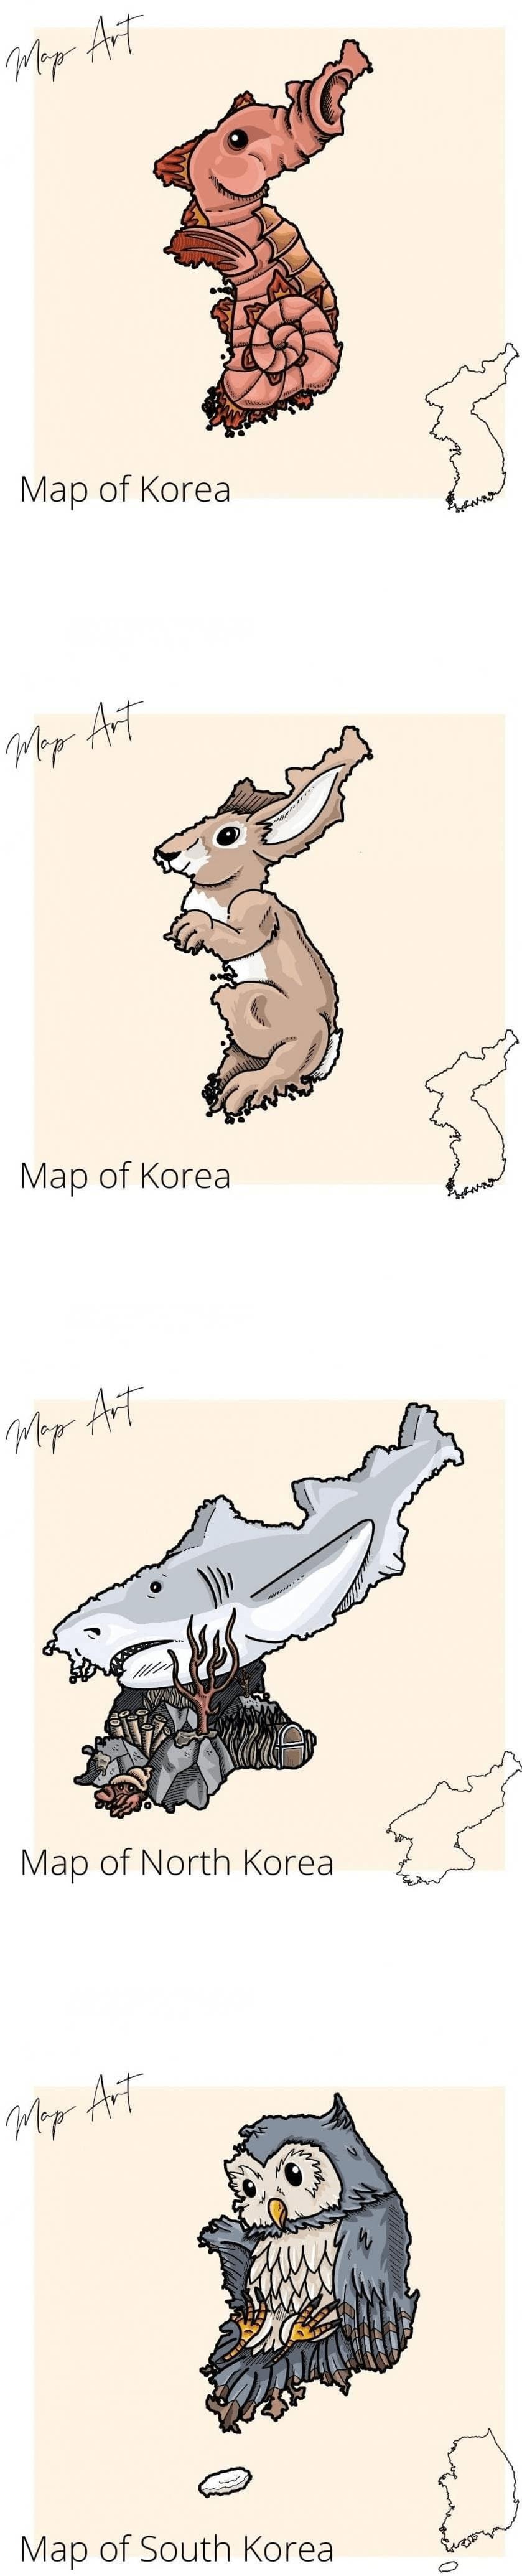 싱글벙글 외국에서 보는 한국의 국토 모양.png.jpg